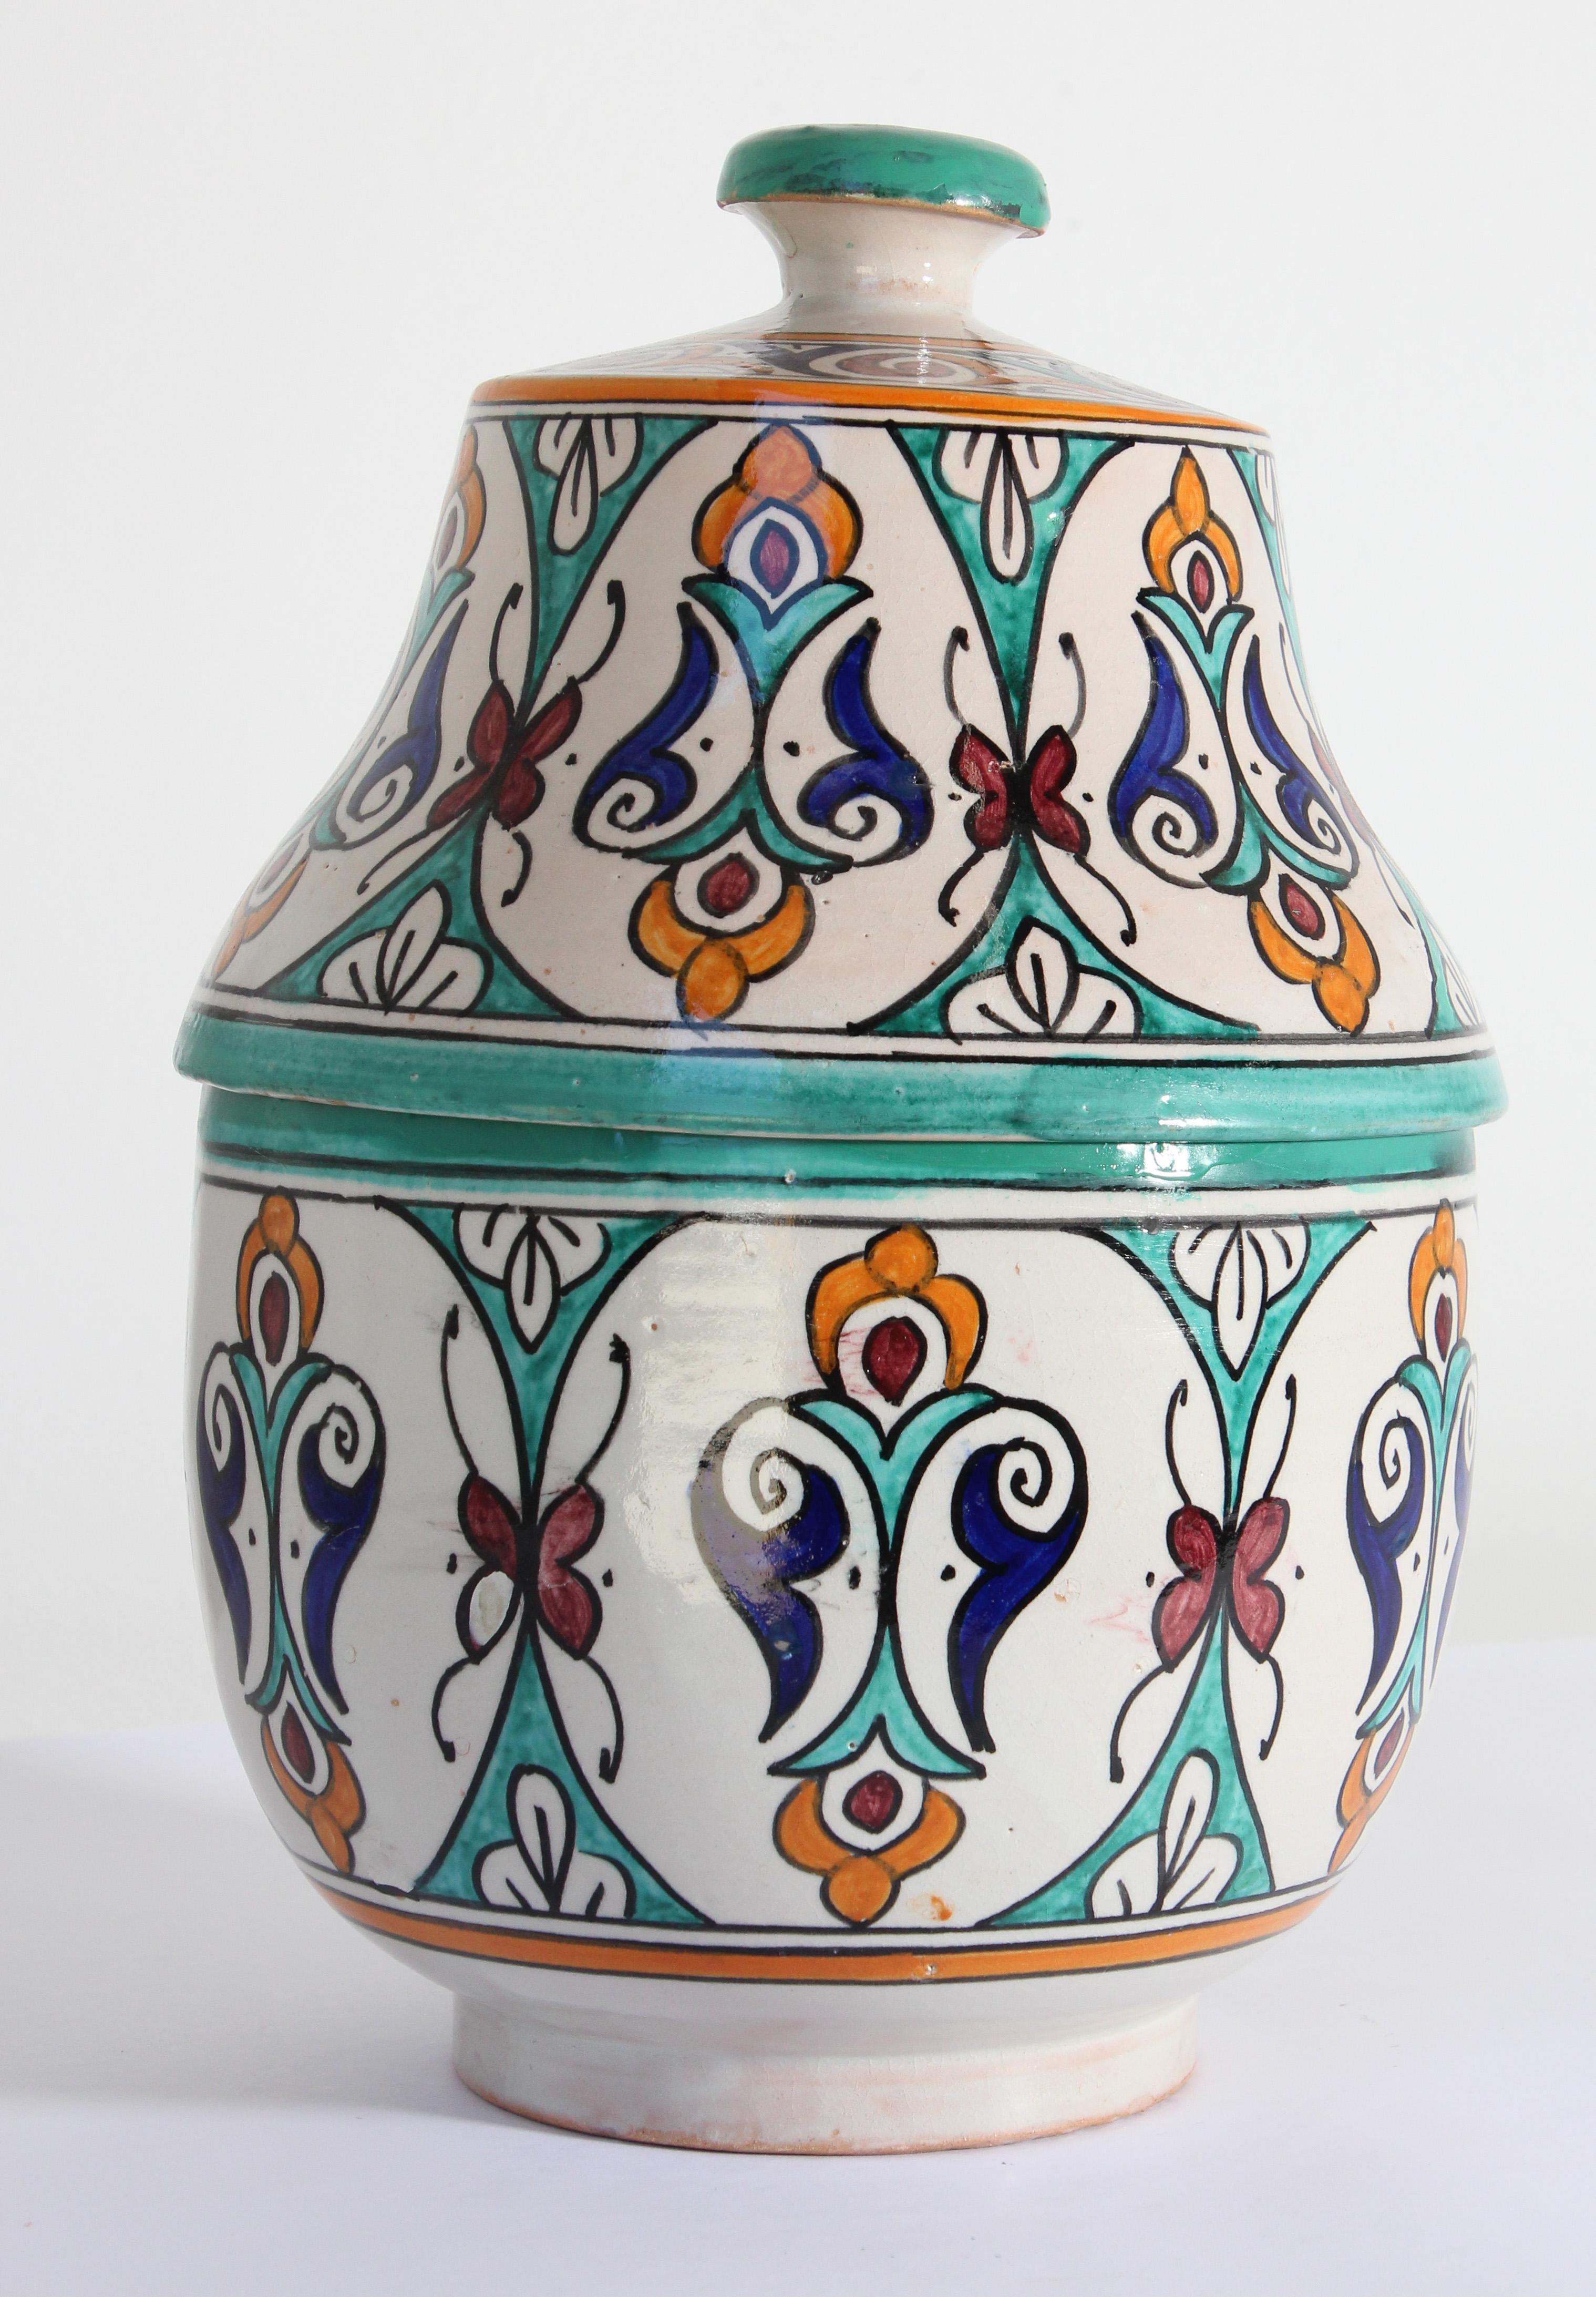 Soupière en céramique mauresque polychrome émaillée marocaine avec couvercle.
Jubbana en céramique peinte à la main, fabriquée par des artisans marocains qualifiés à Fès, au Maroc.
Motifs mauresques dans les couleurs turquoise, bleu cobalt,